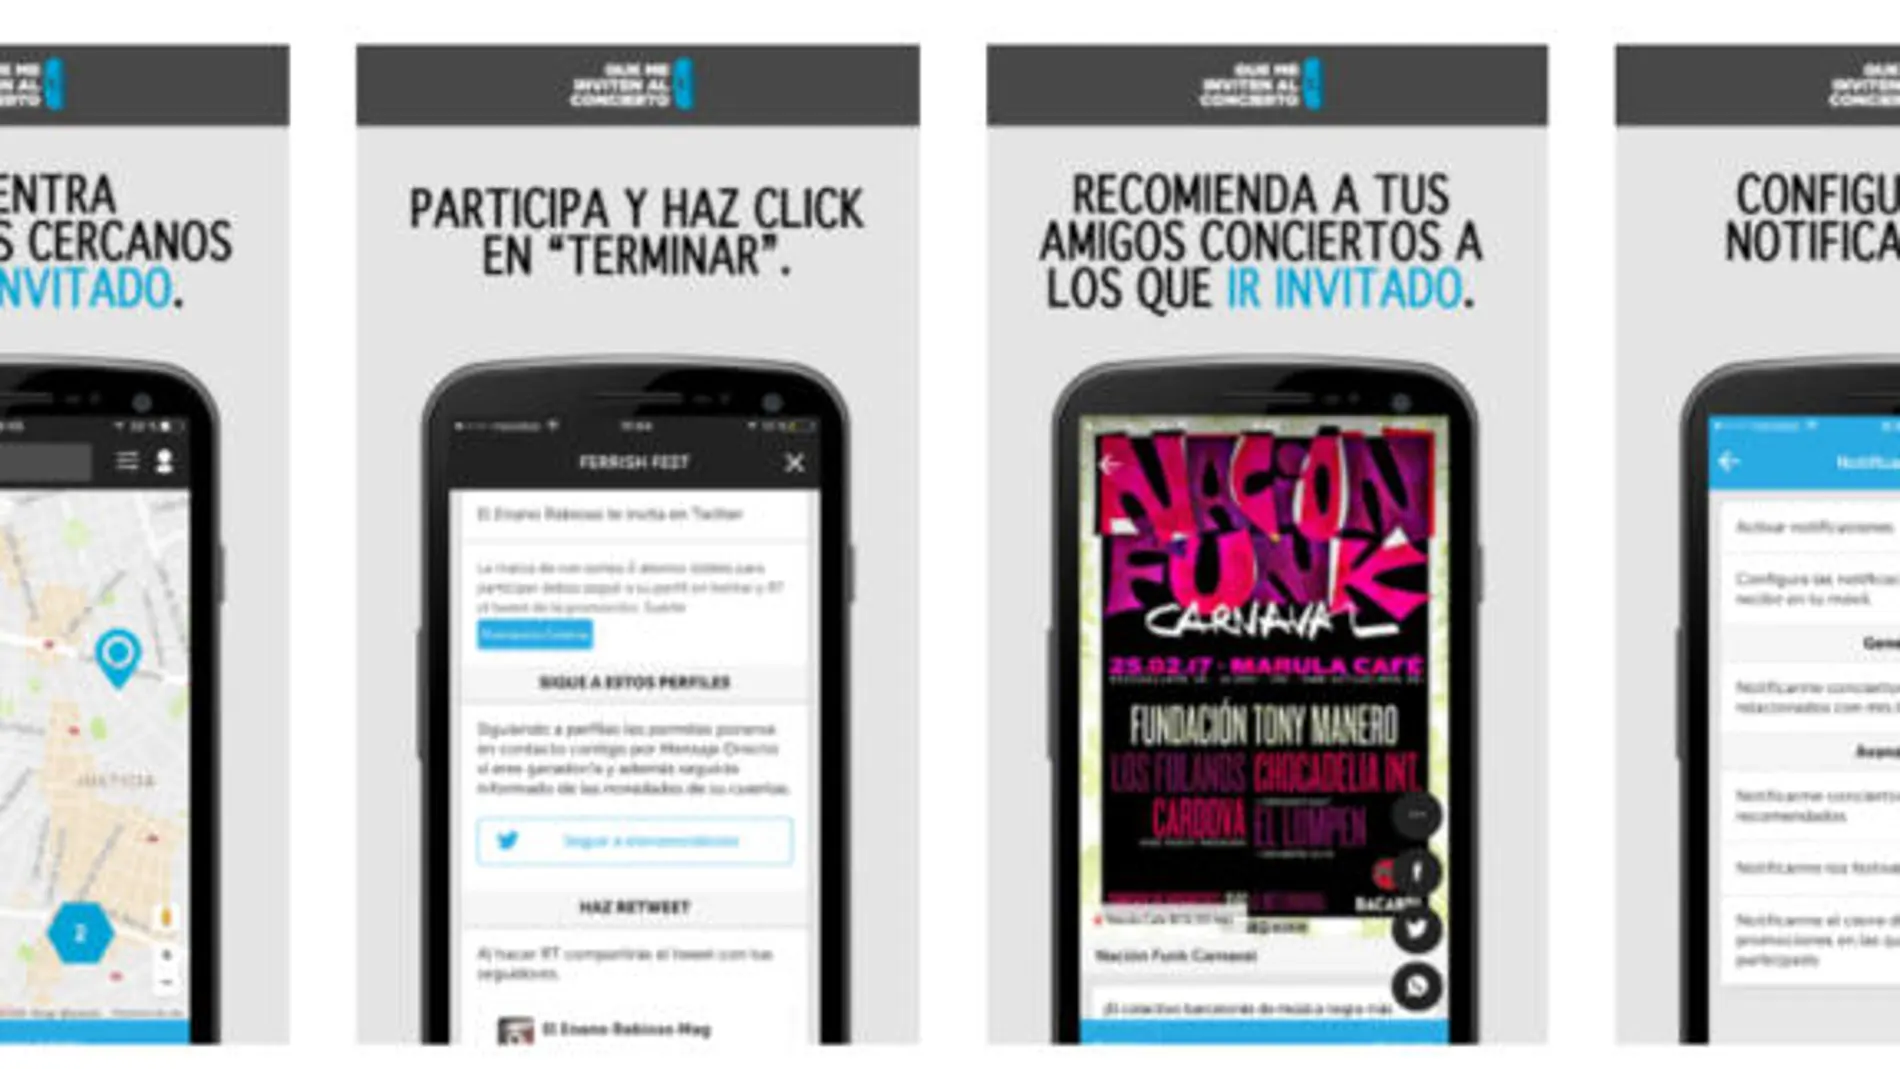 Una app te permite conseguir invitaciones para conciertos